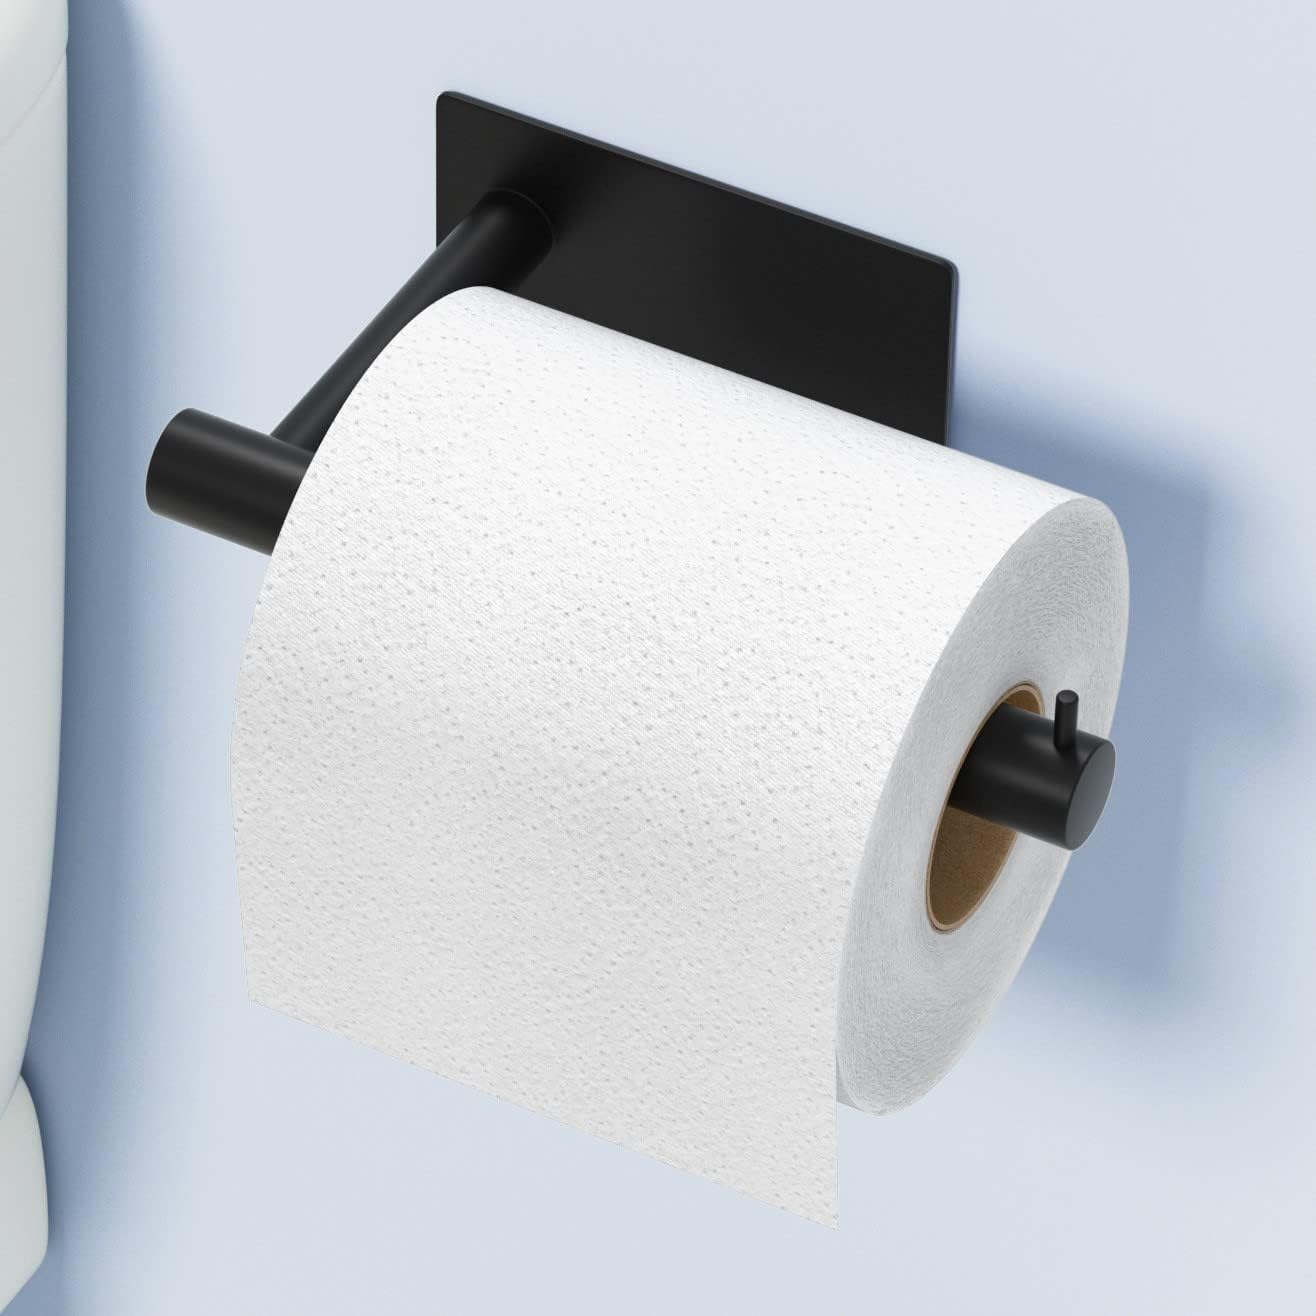 Segmart Matte Wall-Mounted Toilet Paper Holder - Walmart.com